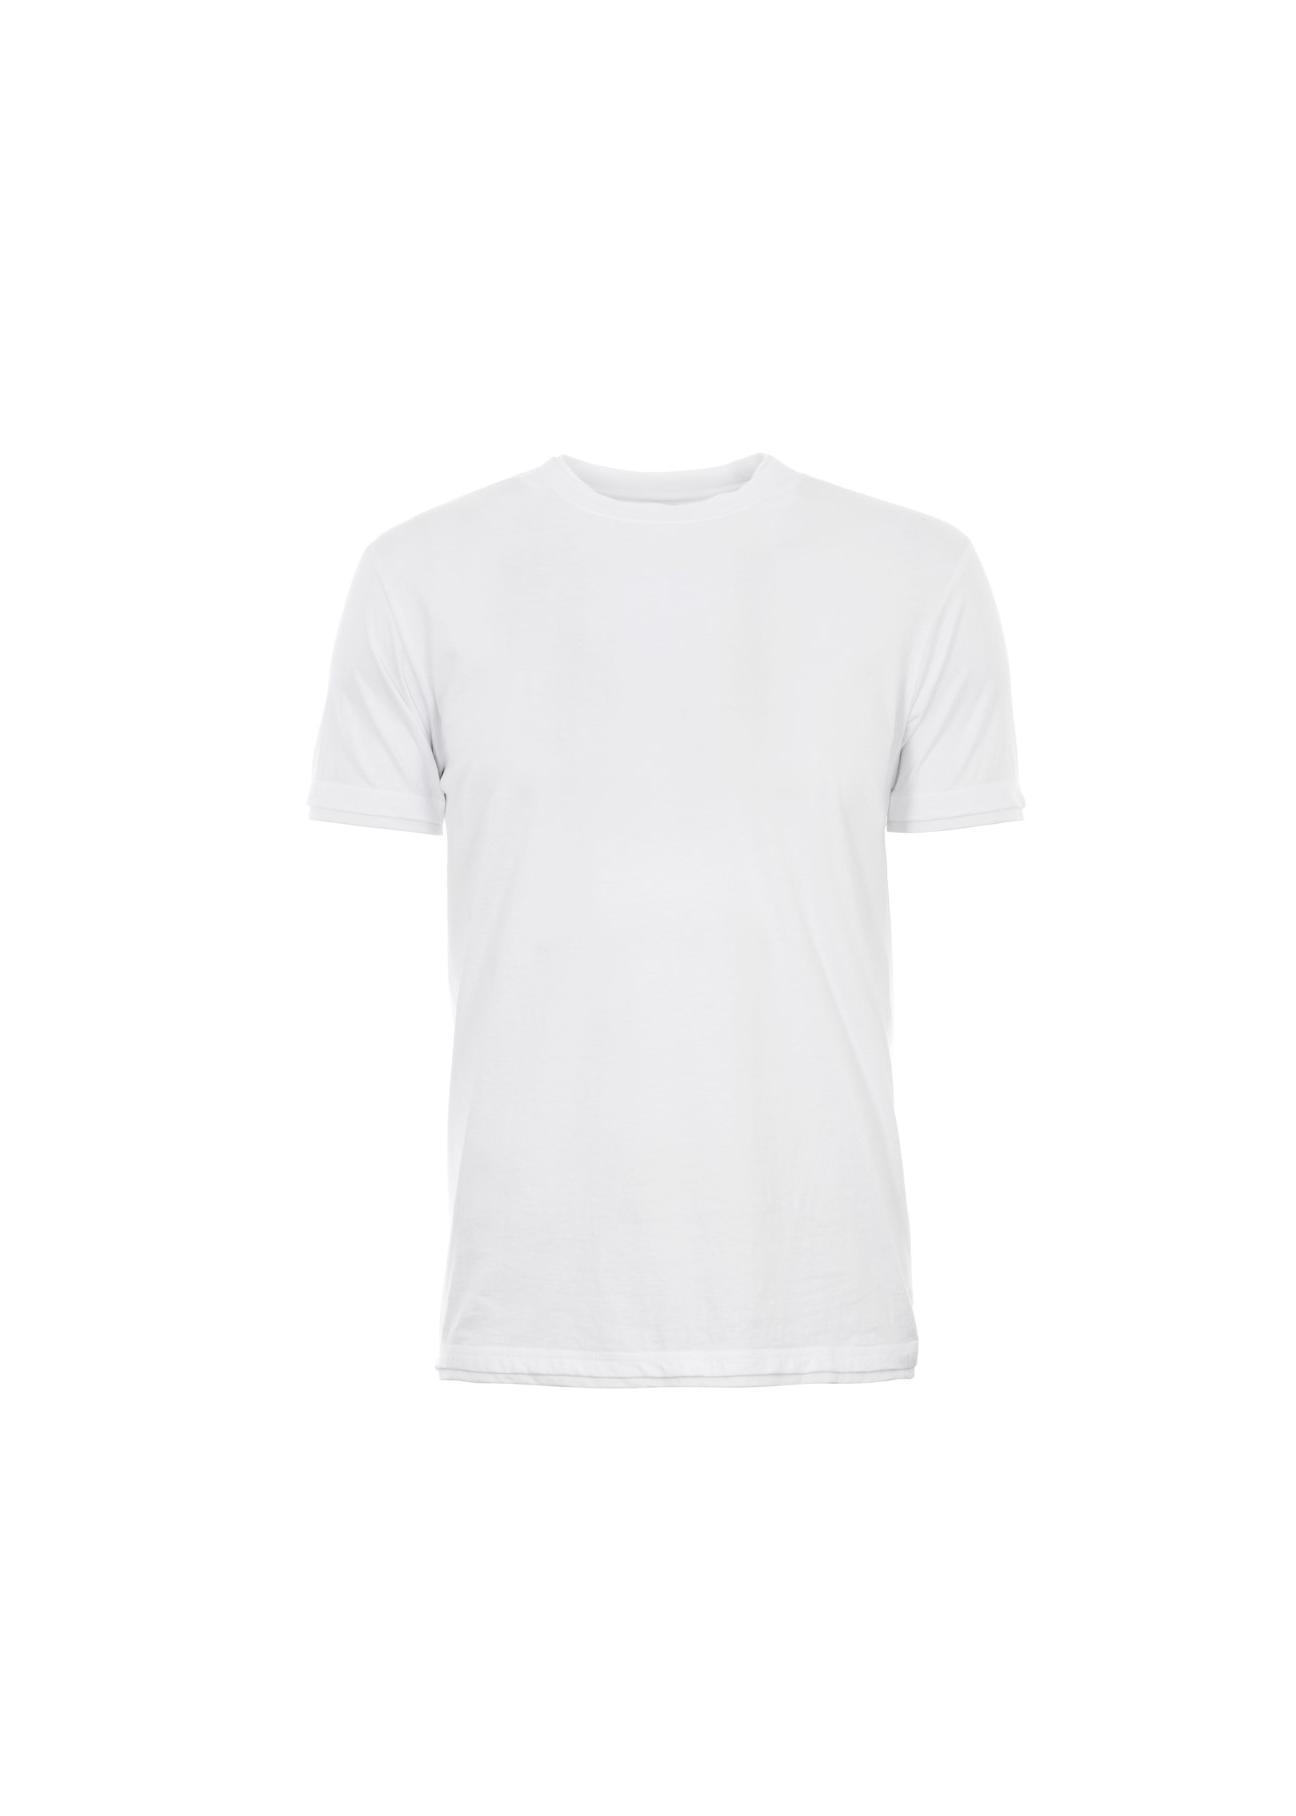 T-shirt męski TSHMT-0001-11(W17)